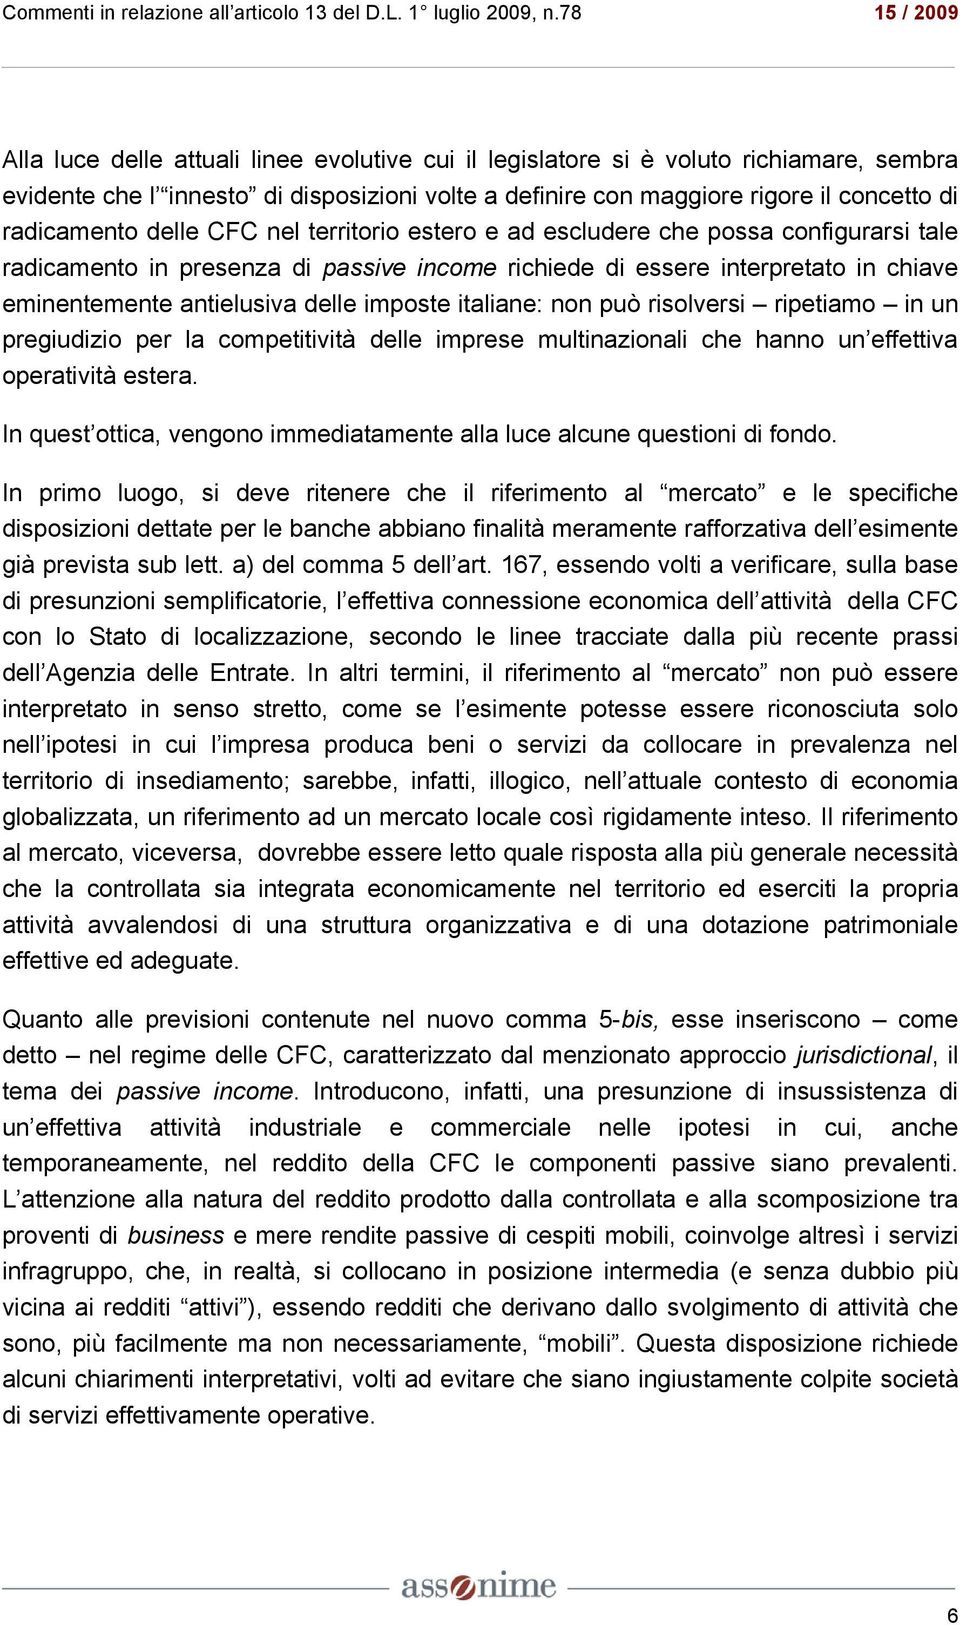 italiane: non può risolversi ripetiamo in un pregiudizio per la competitività delle imprese multinazionali che hanno un effettiva operatività estera.